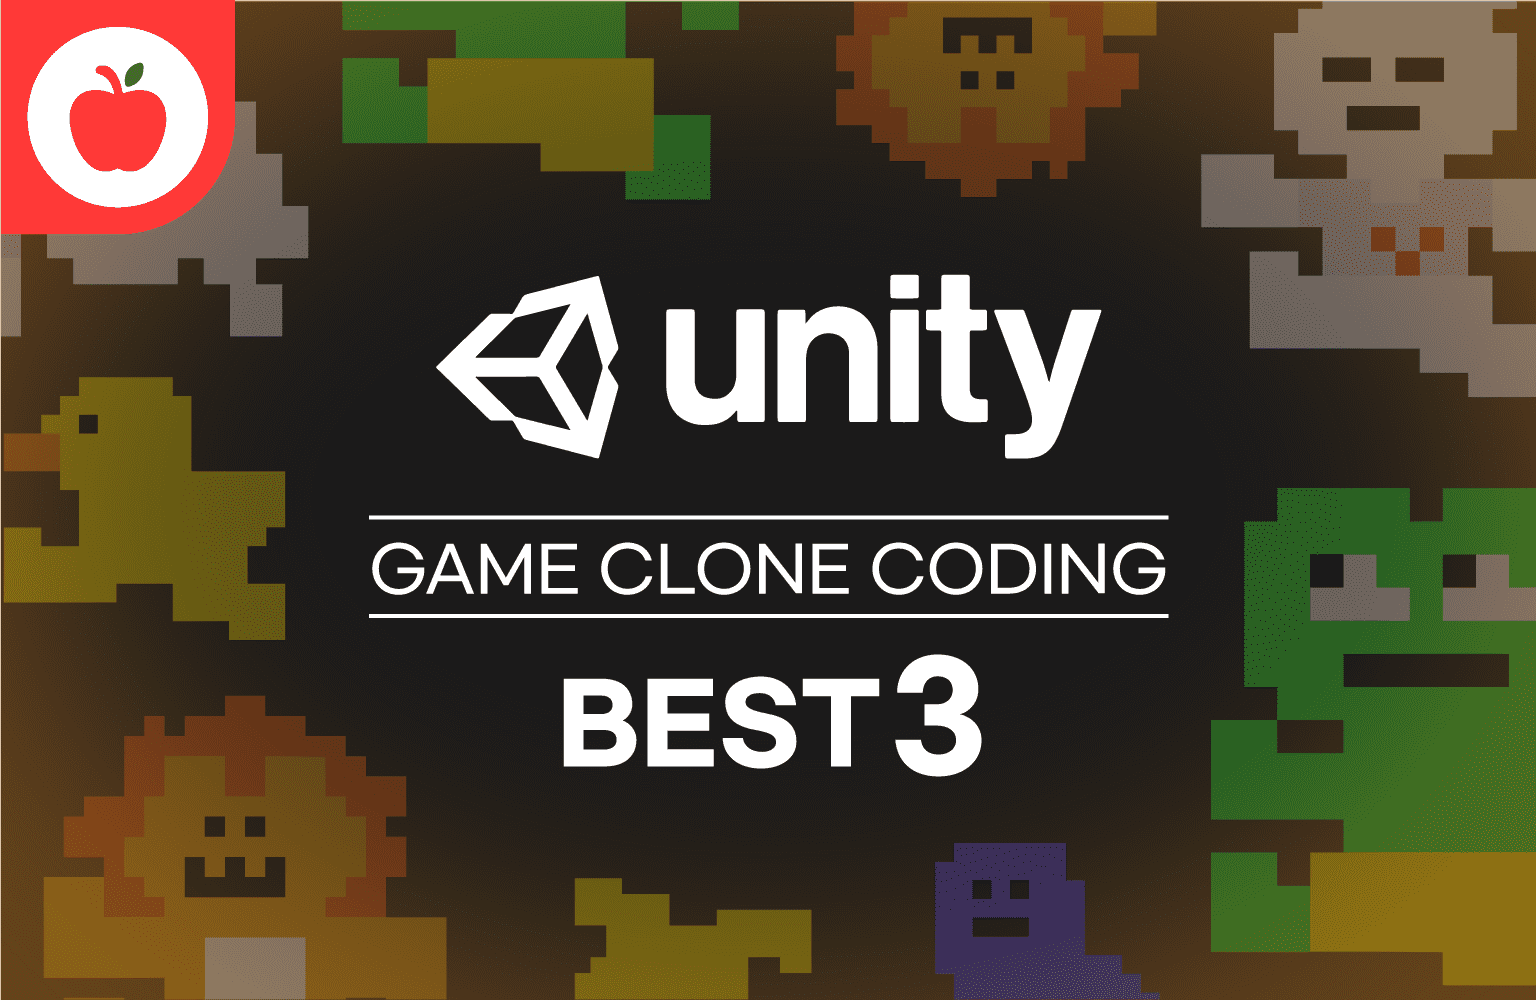 누구나 할 수 있다! 따라하며 배워보는 Unity3D 게임 클론 BEST 3